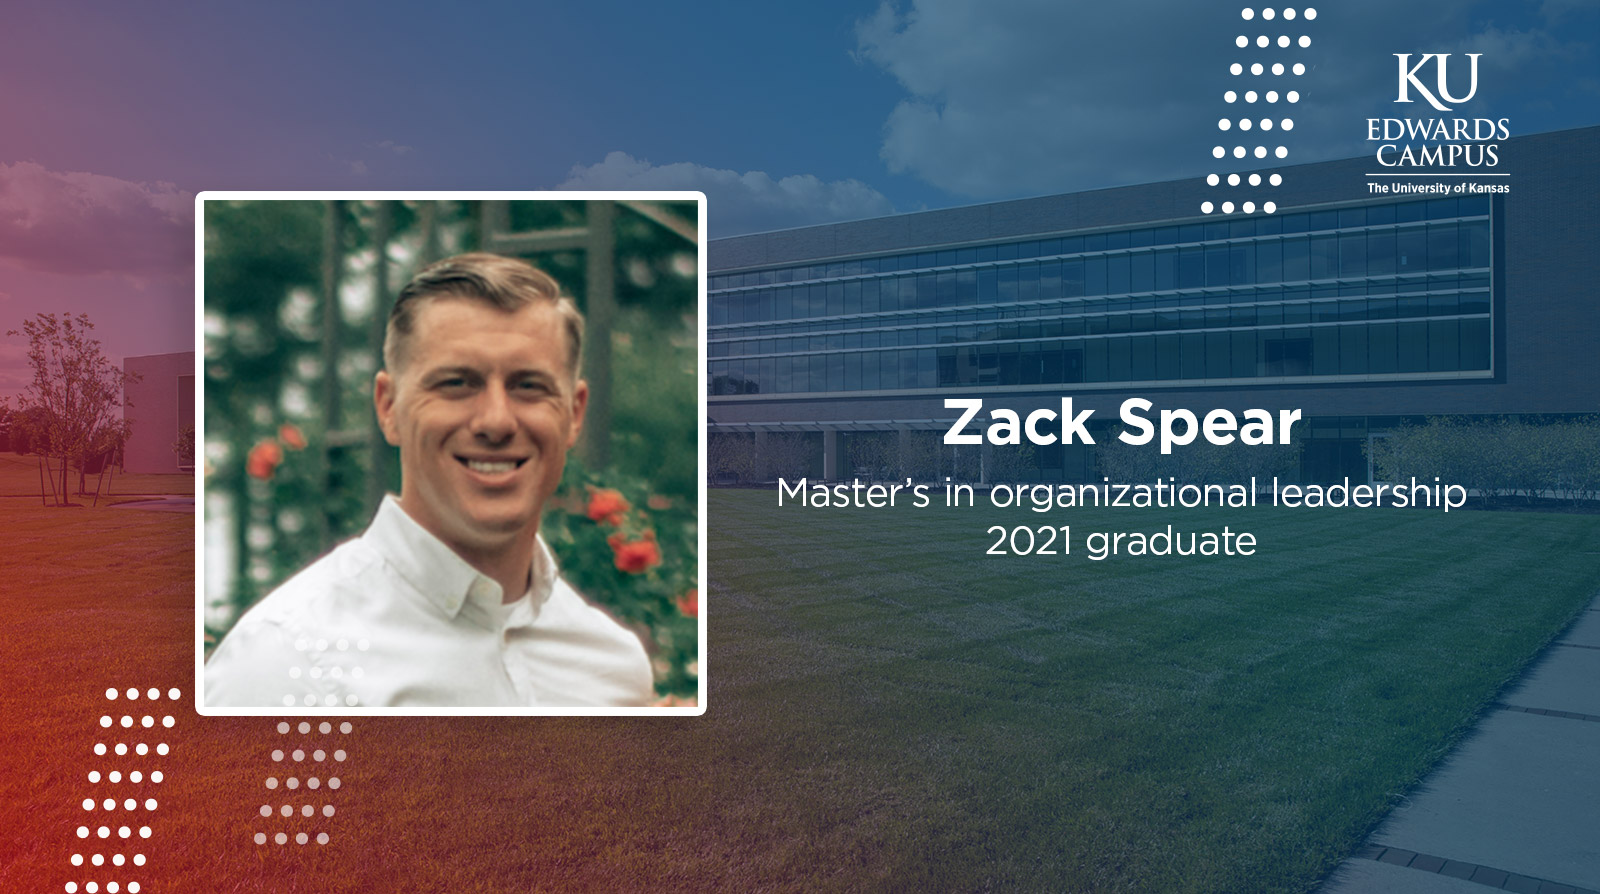 Zack Spear, master's in organizational leadership